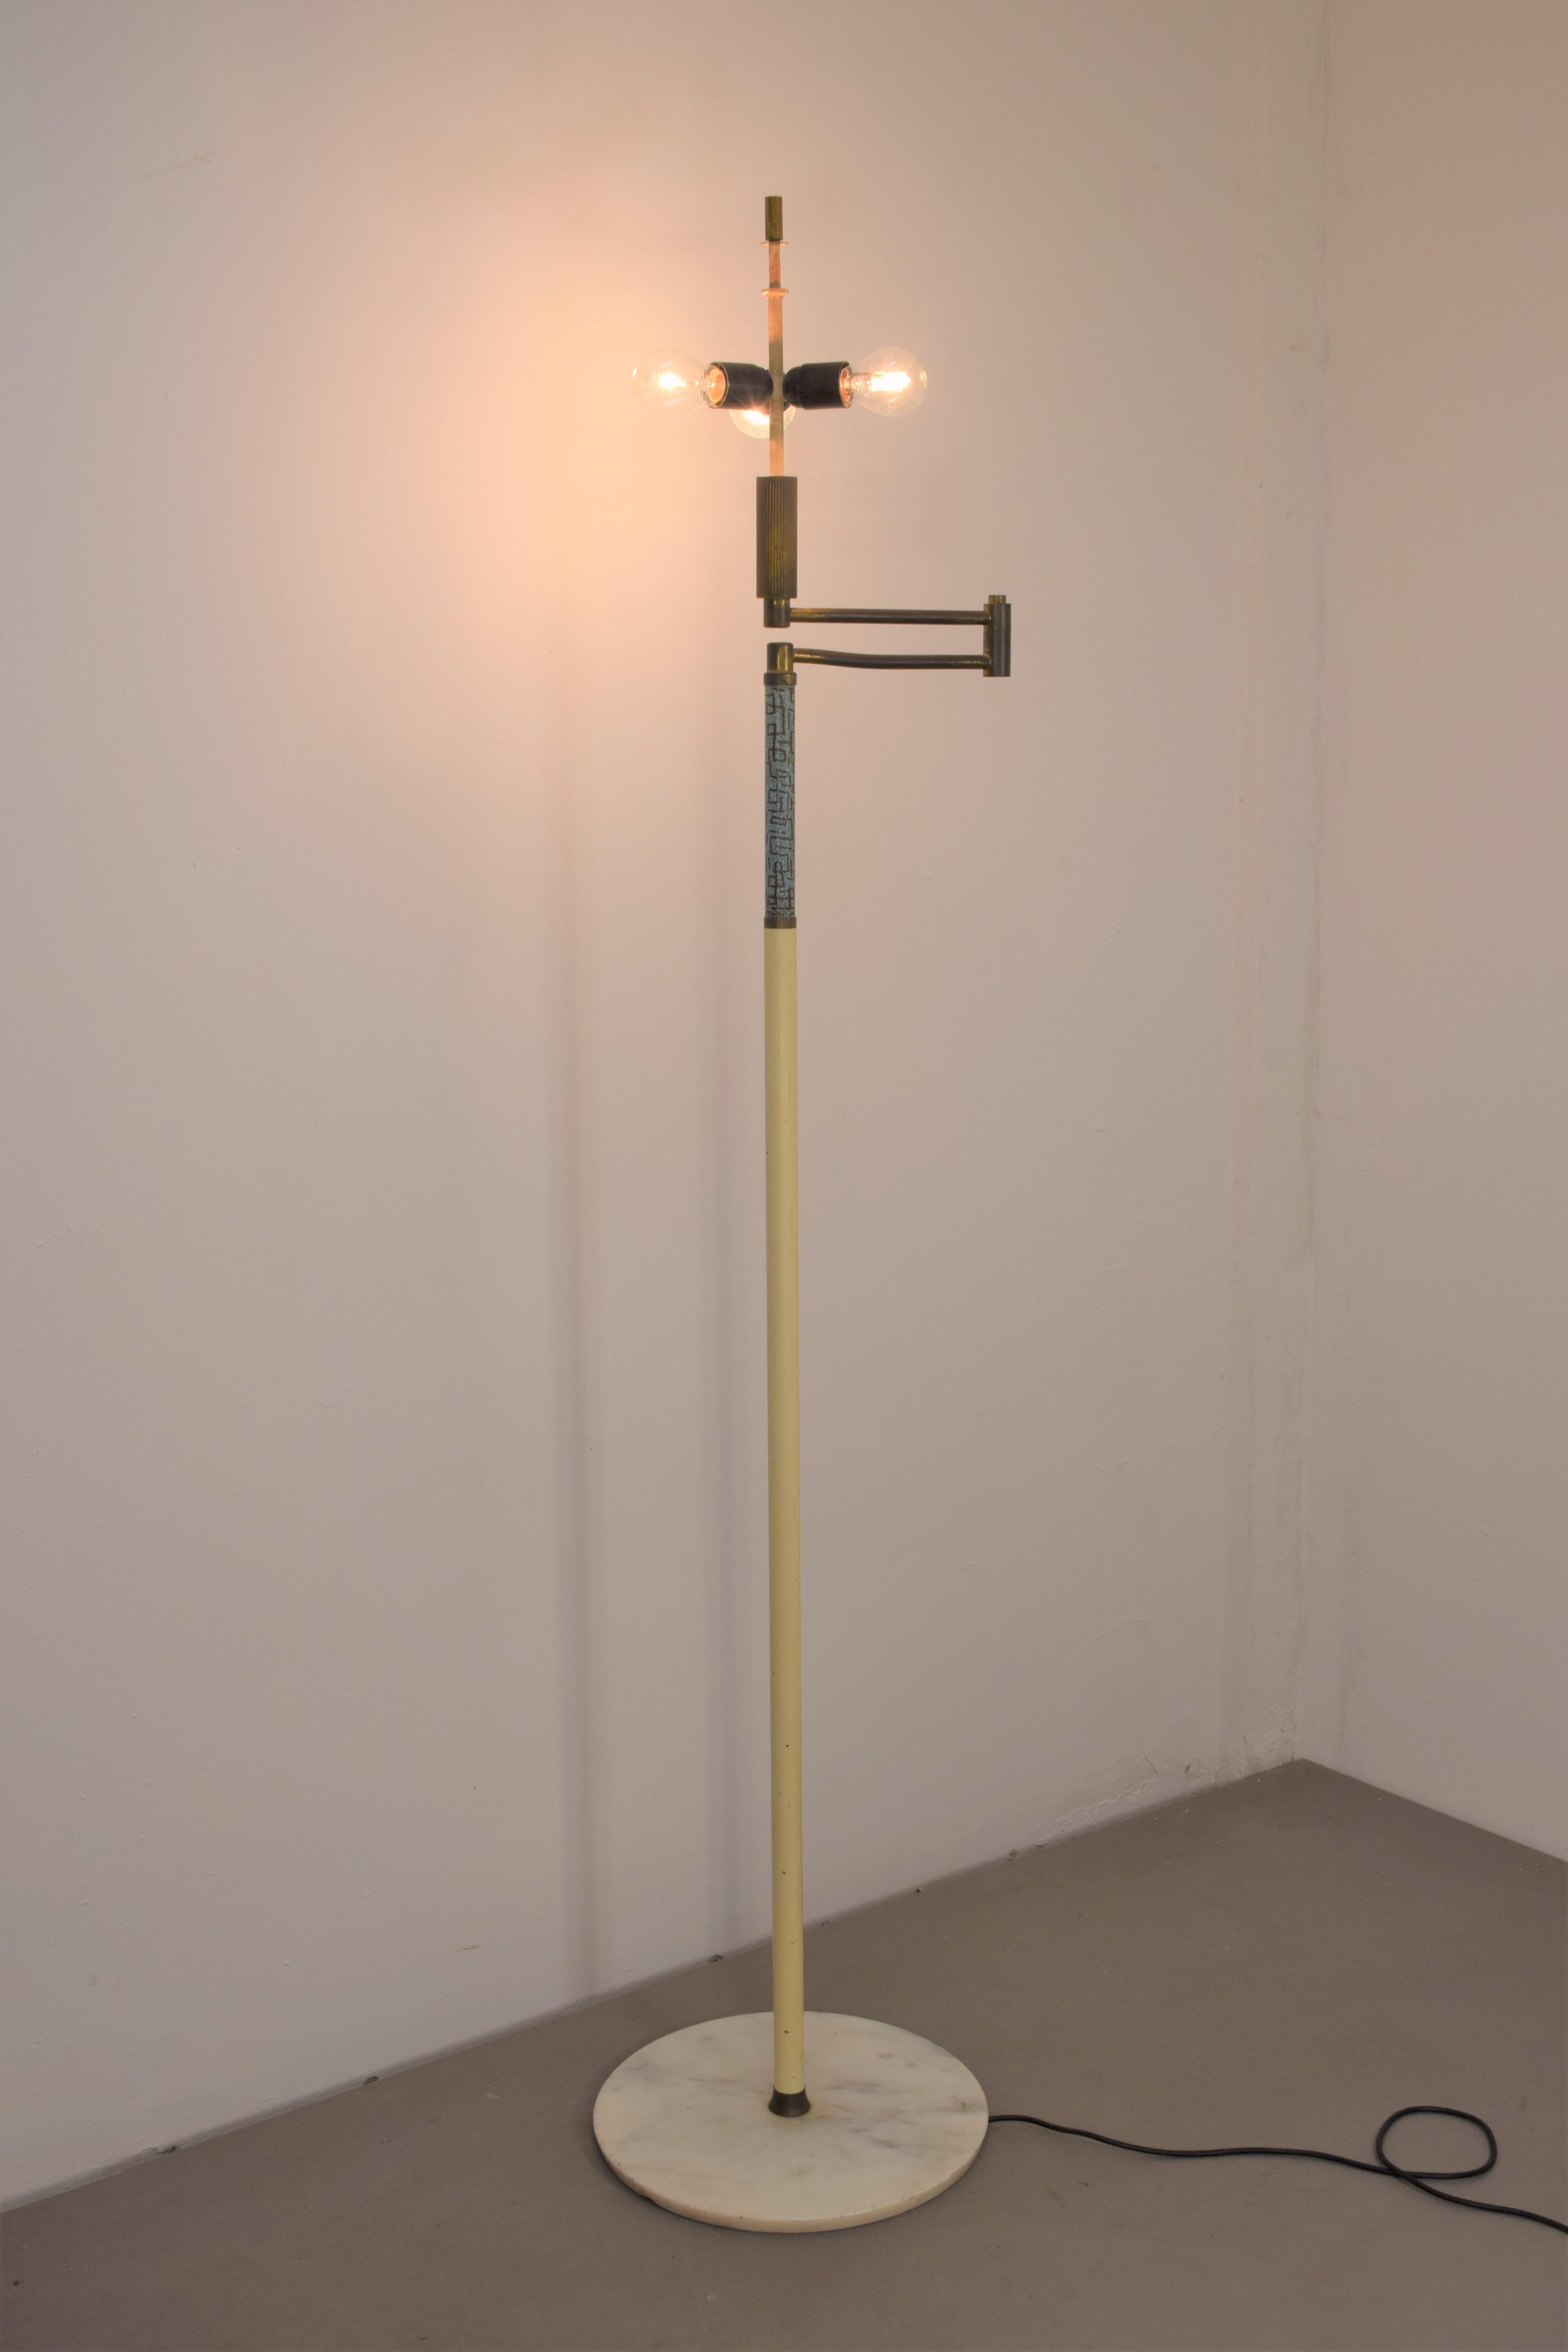 Italian floor lamp by Angelo Brotto for Esperia, 1960s.

Dimensions: H= 174 cm; D= 38 cm; max est. = 70 cm.